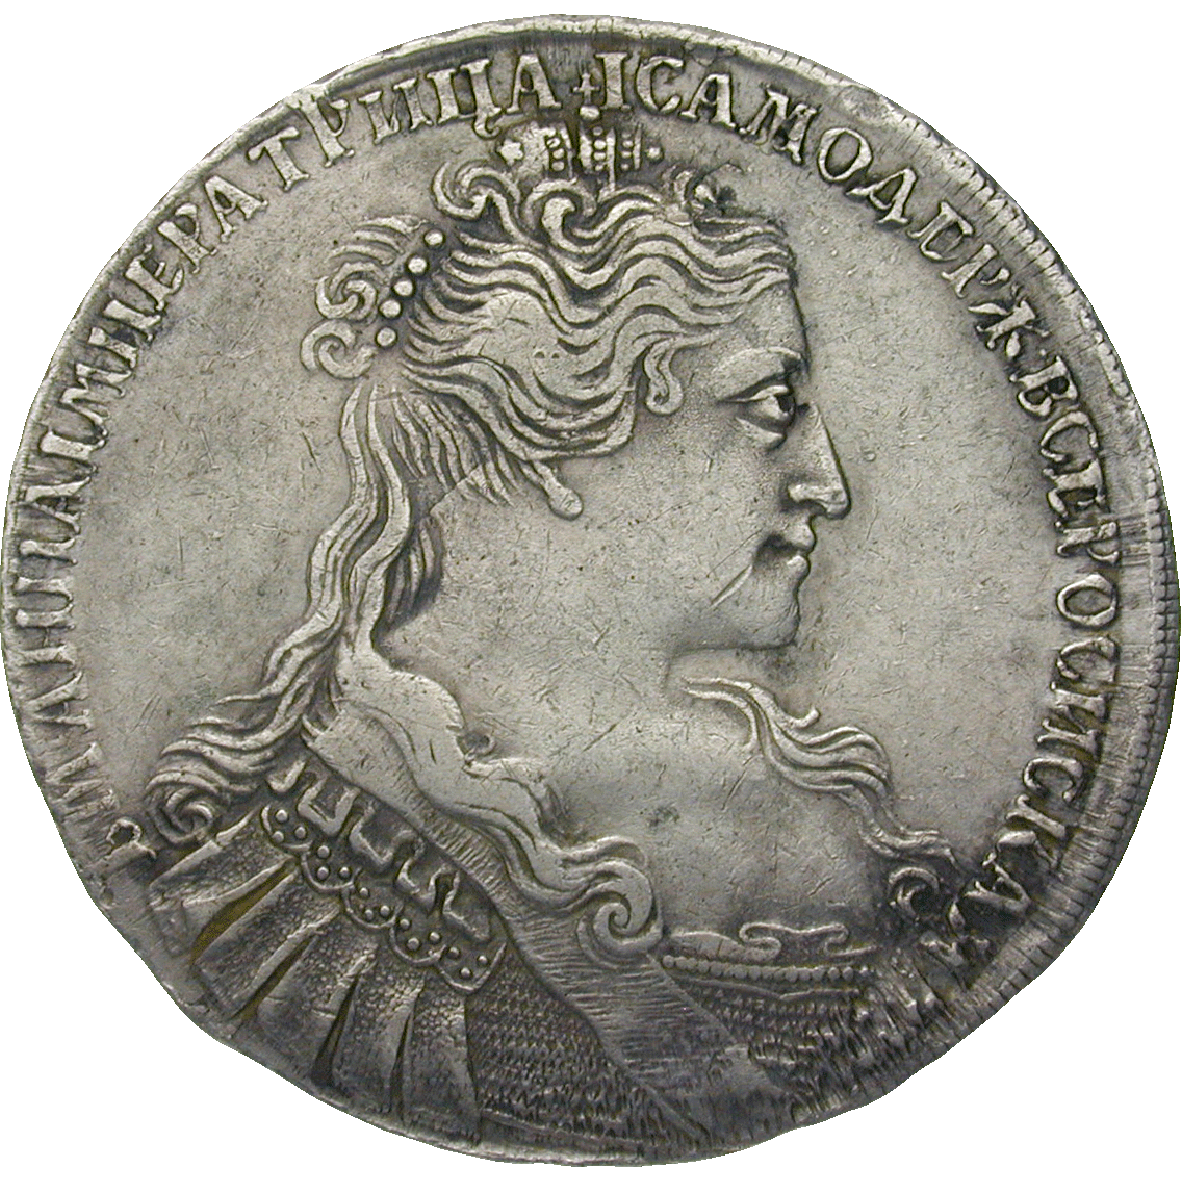 Russian Empire, Anna Ivanovna, Ruble 1731 (obverse)